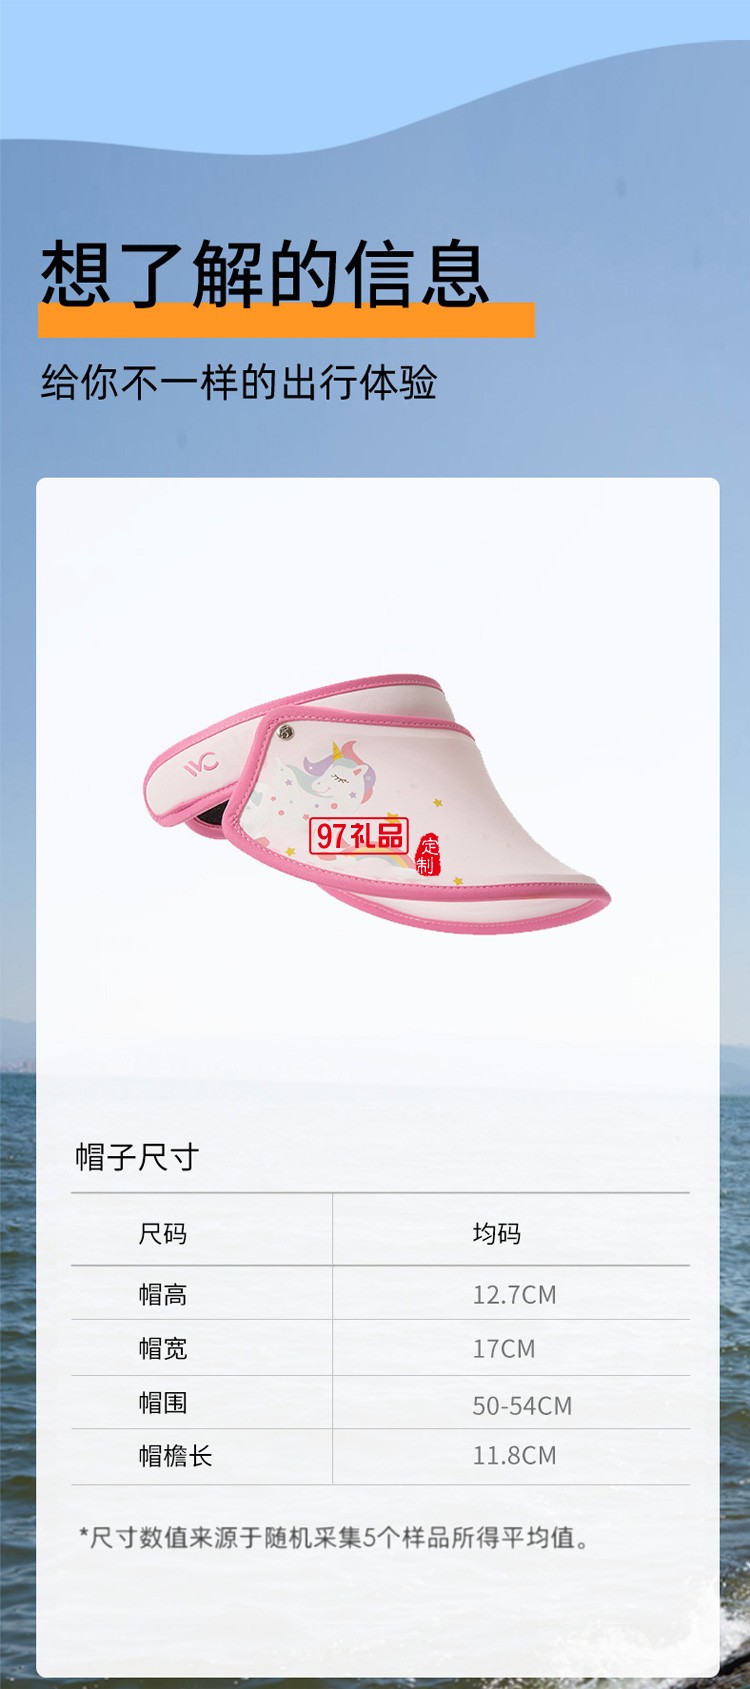 VVC防晒儿童遮脸太阳帽夏季出游防紫外线宝宝帽定制公司广告礼品